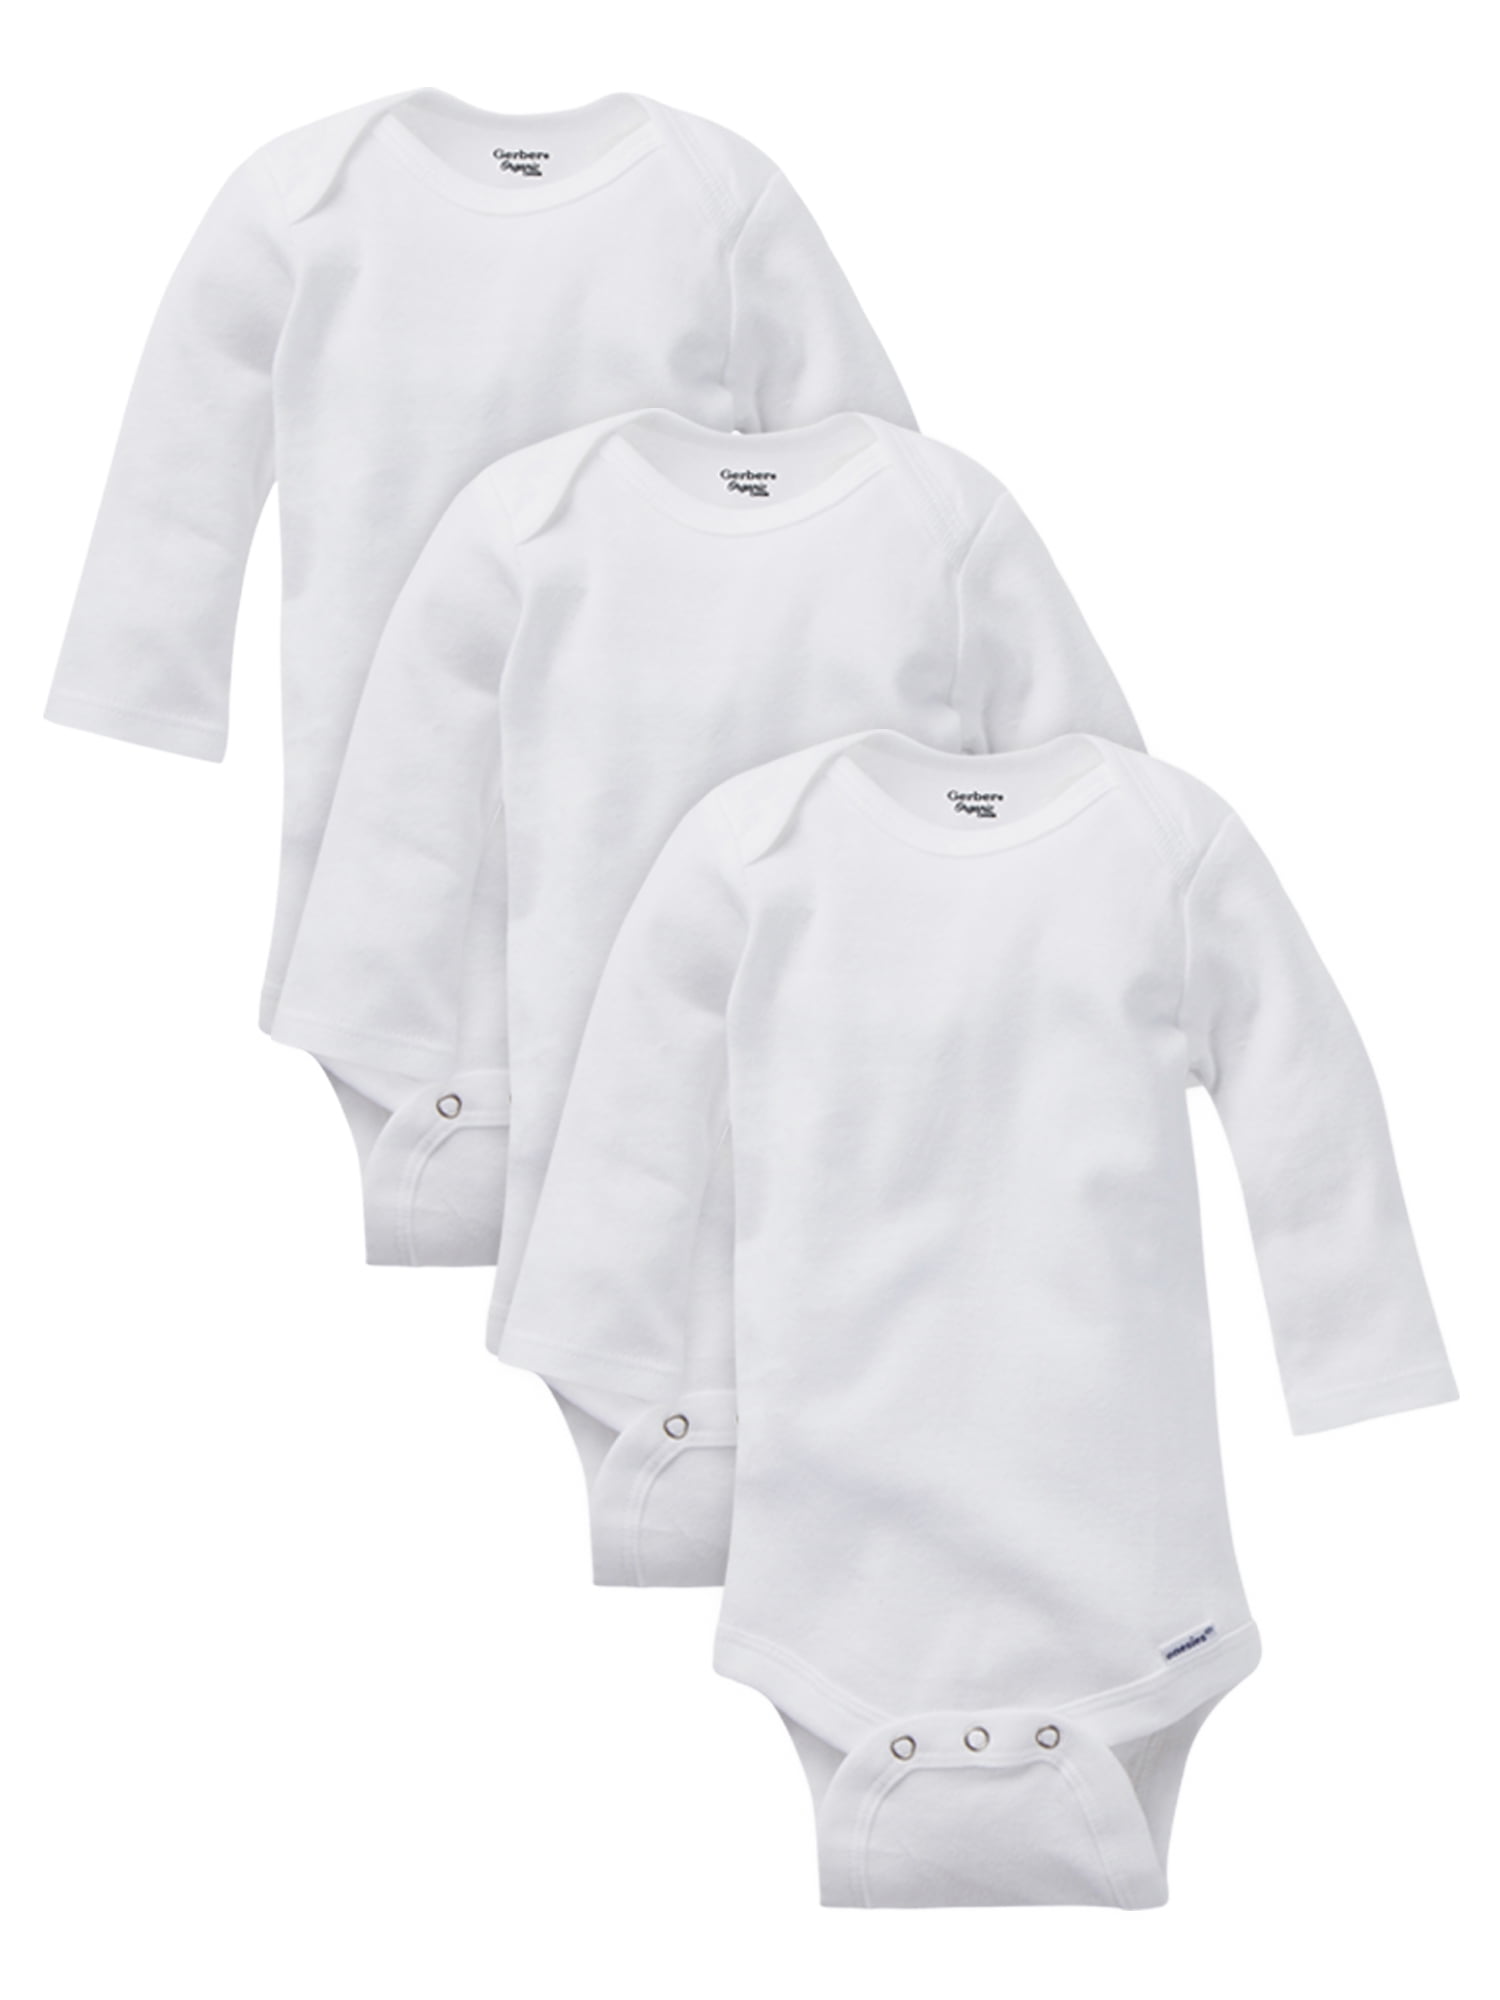 Gerber Baby Boy, Baby Girl, & Unisex Long Sleeve White Onesies Bodysuits, 3 Pack (Preemie-24M)